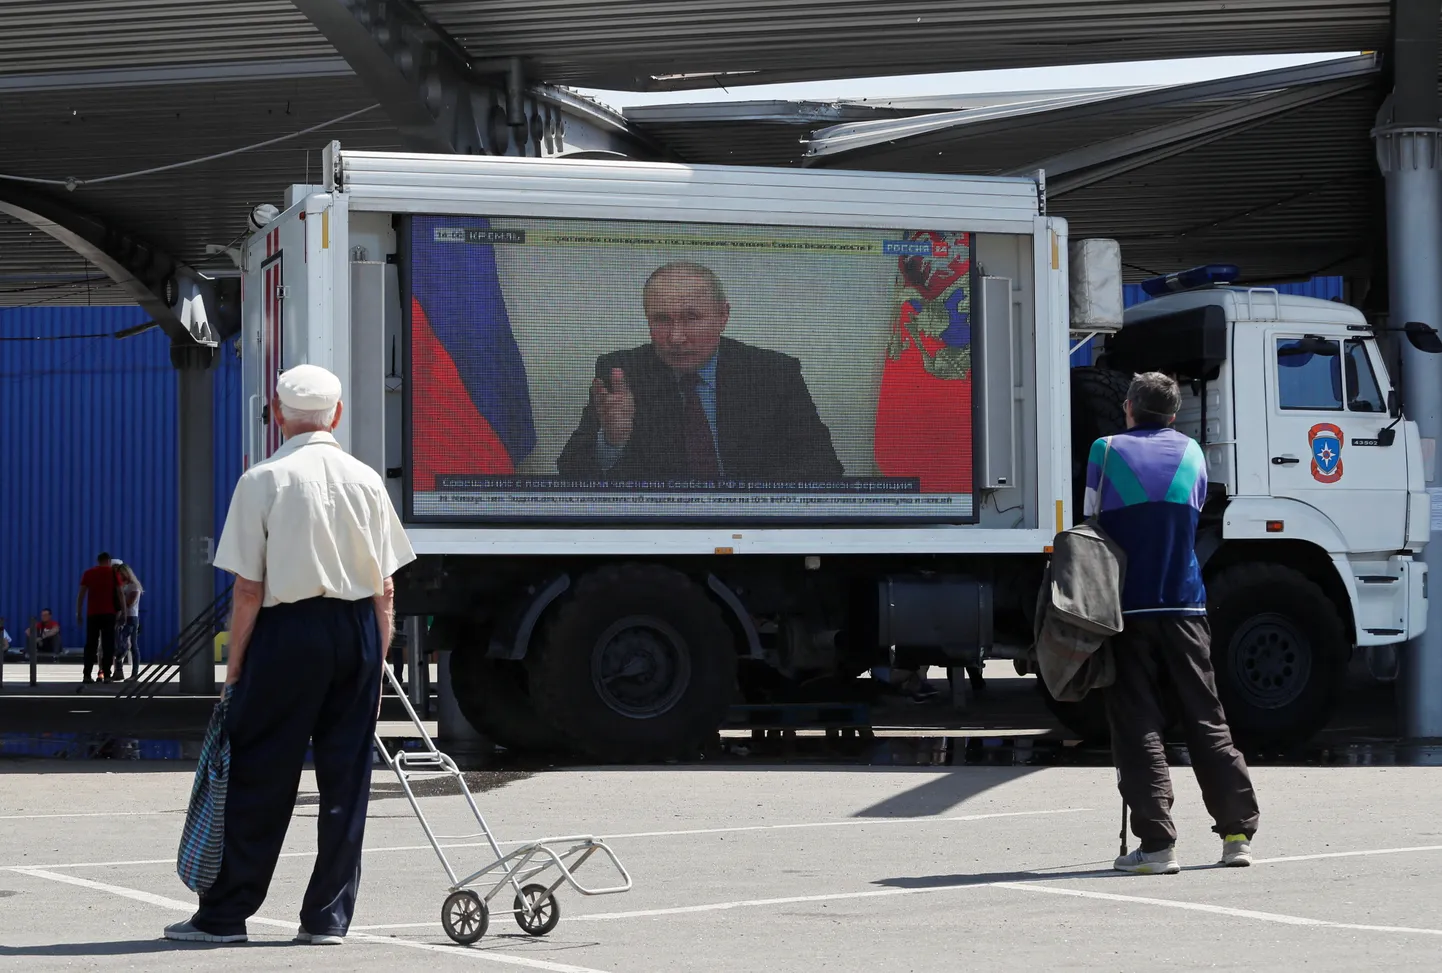 Venemaa president Vladimir Putin oma sõnumit edastamas.